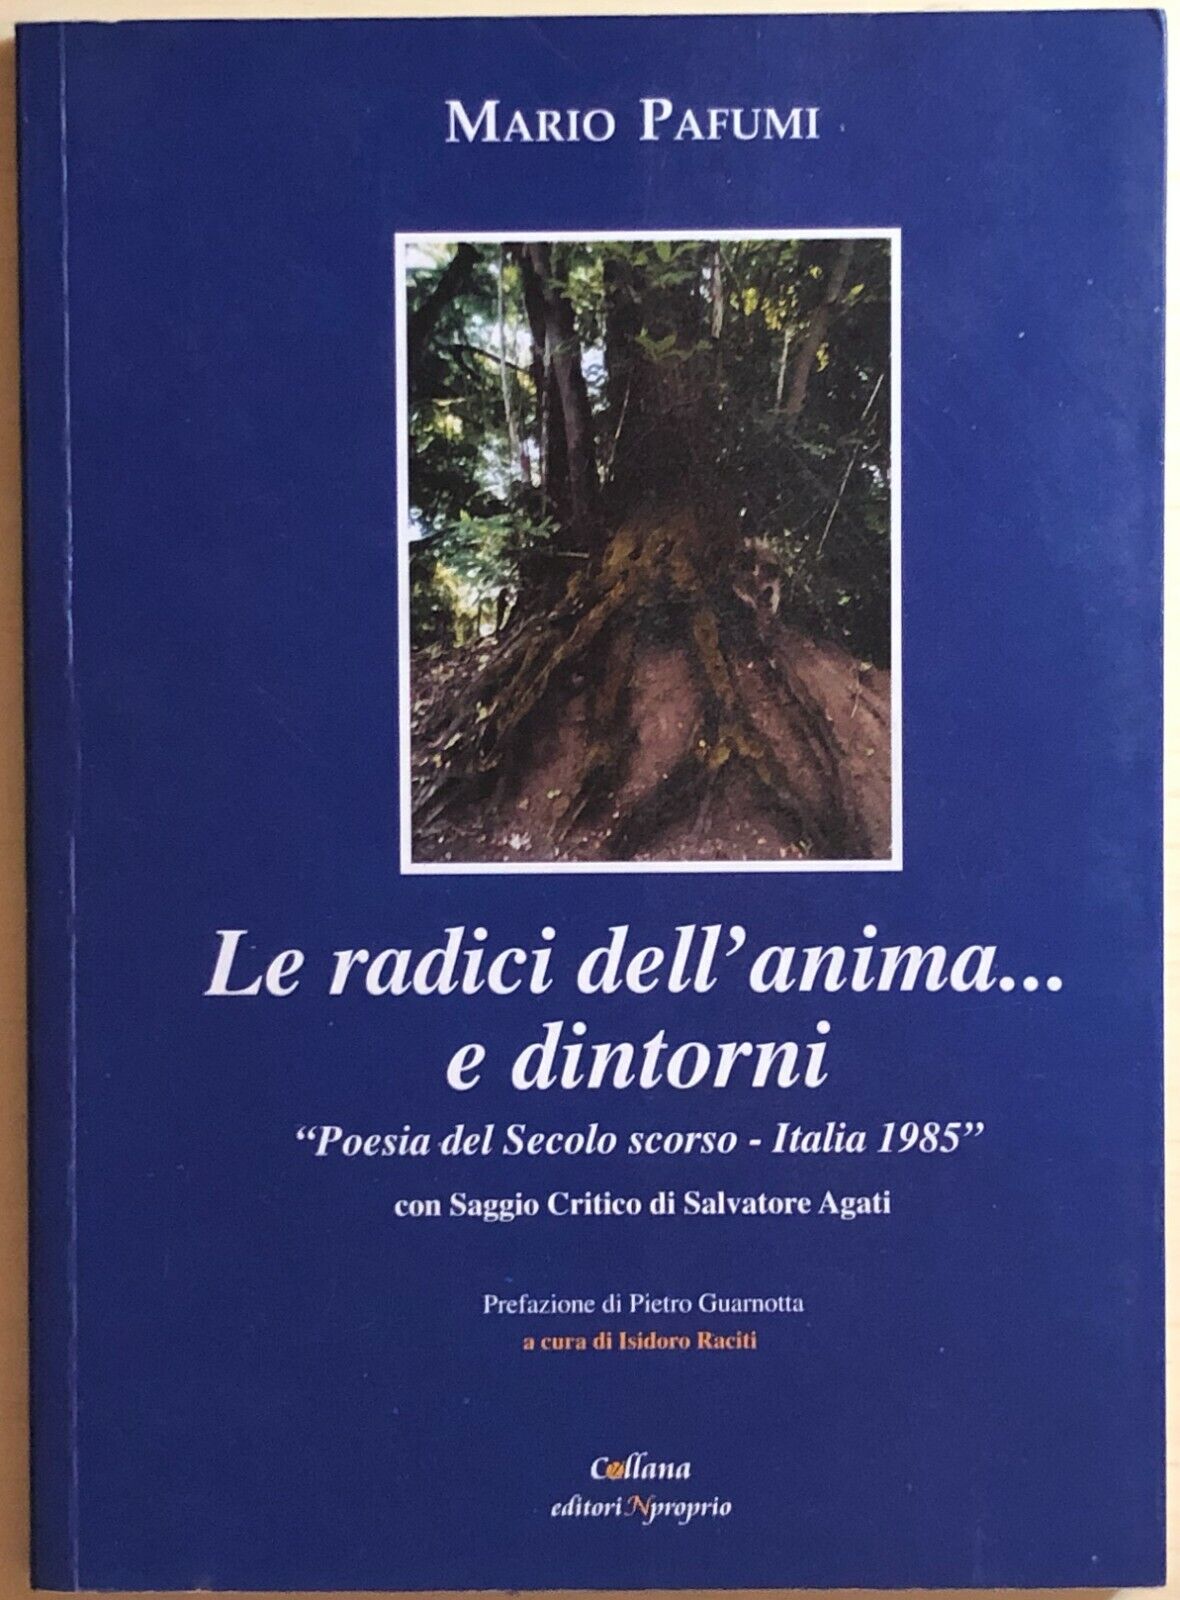 Le radici dell'anima... e dintorni di Mario Pafumi, 2004, Editorinproprio